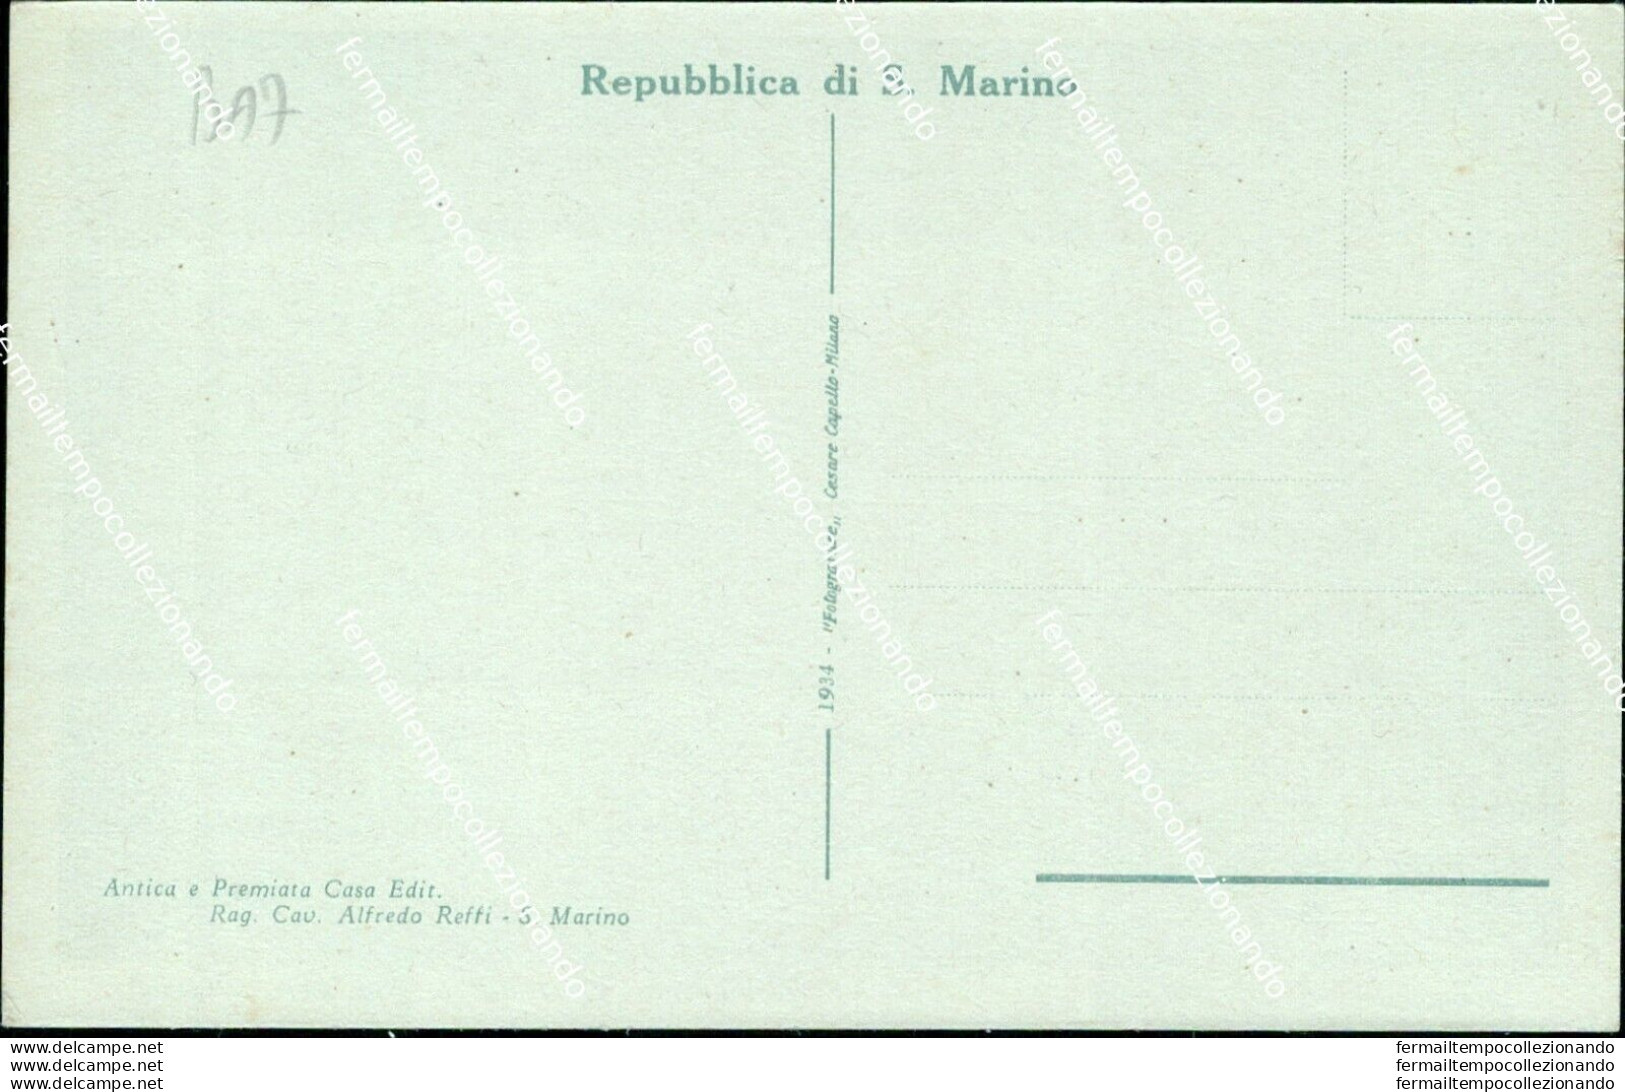 Ba7 Cartolina Repubblica Di San Marino Citta' Monumento Garibaldi E Via Xx Marzo - Saint-Marin